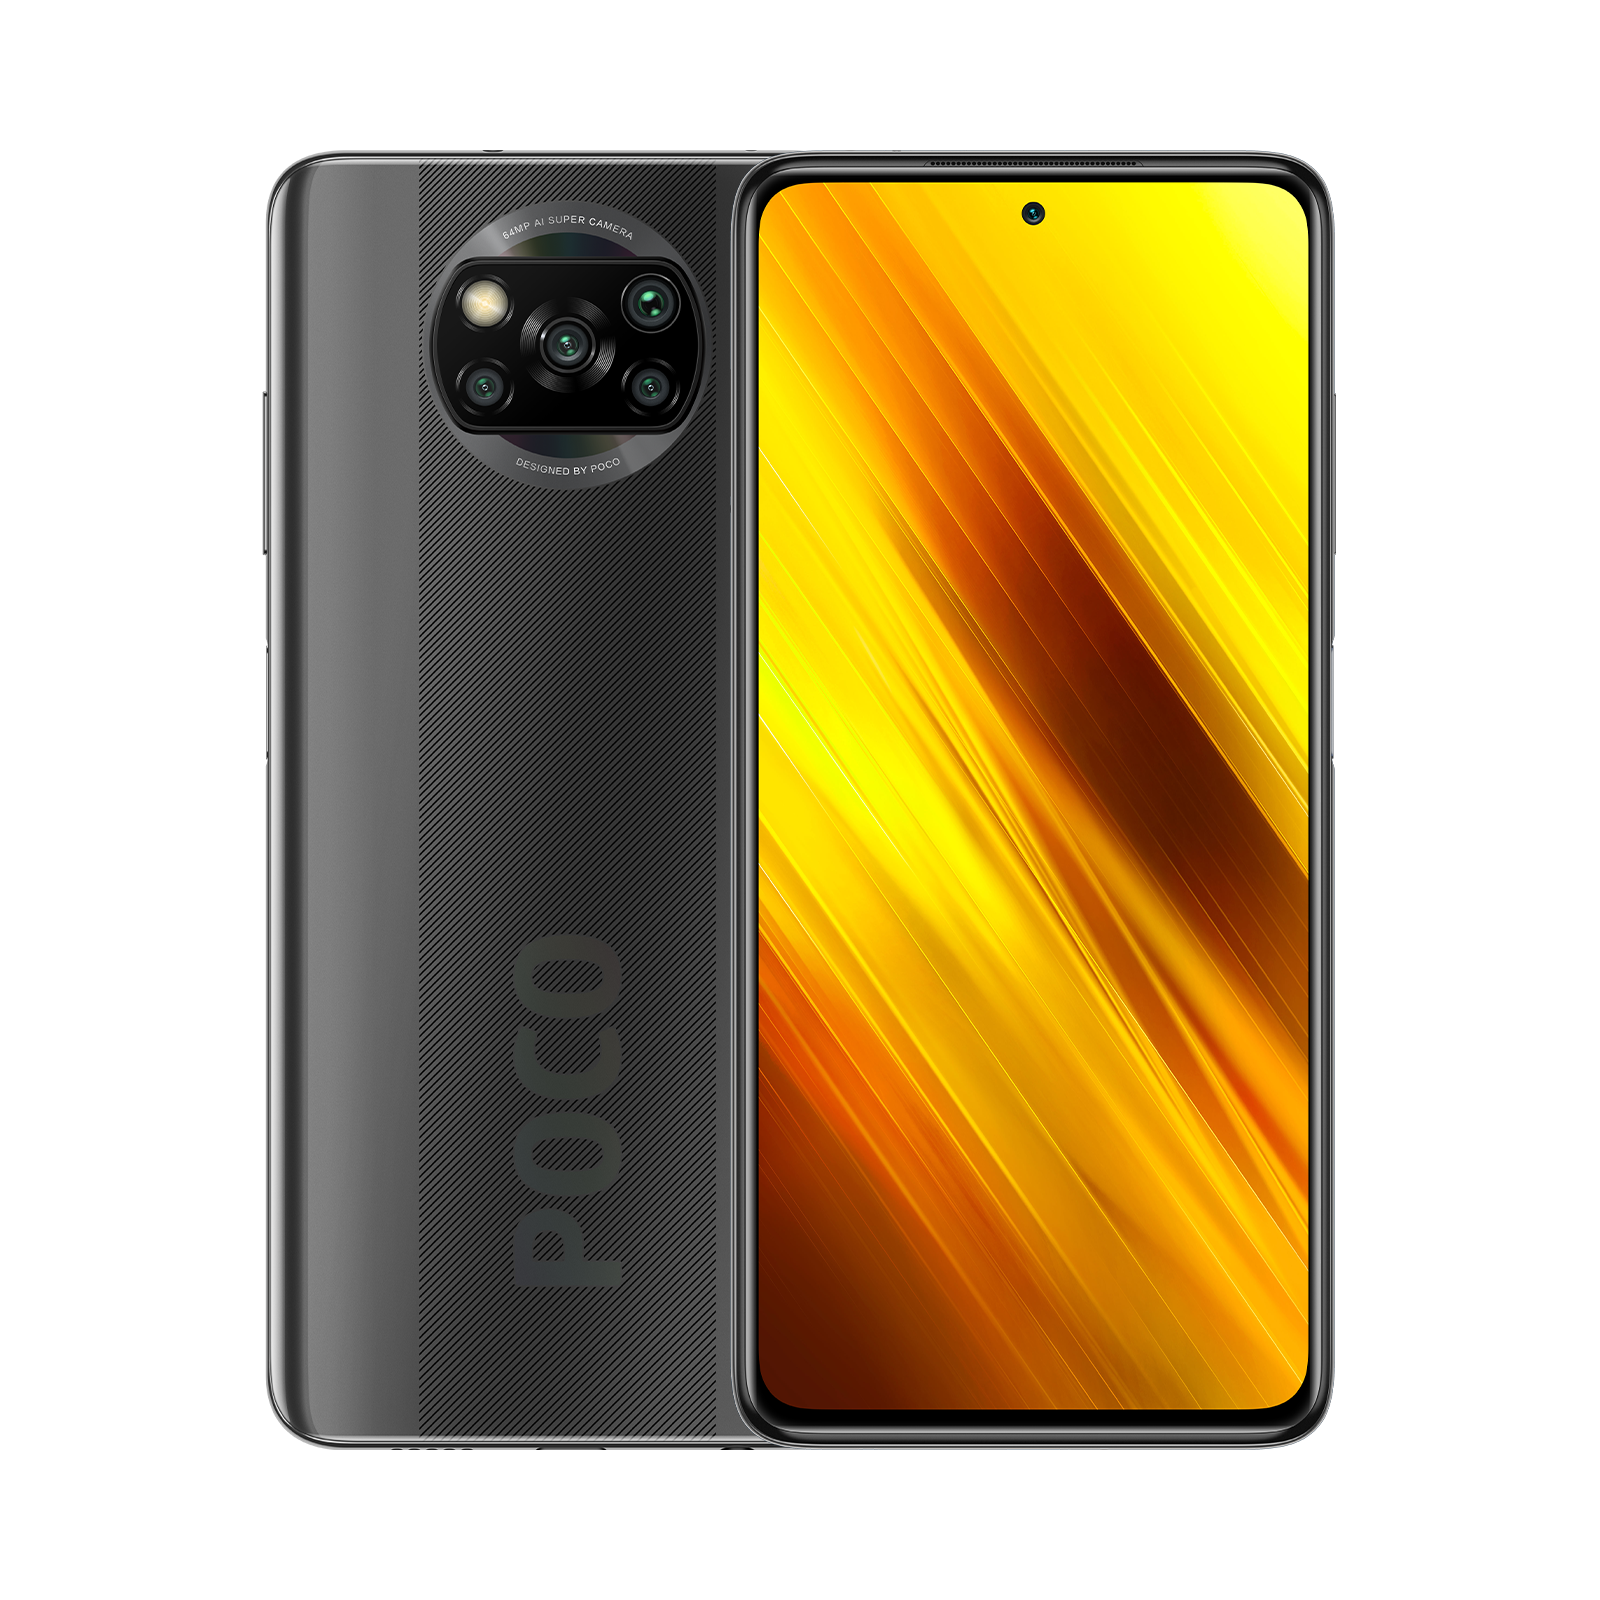 Poco X3 भारत में 22 ​सितंबर को दस्तक देगा, जानें संभावित फीचर्स